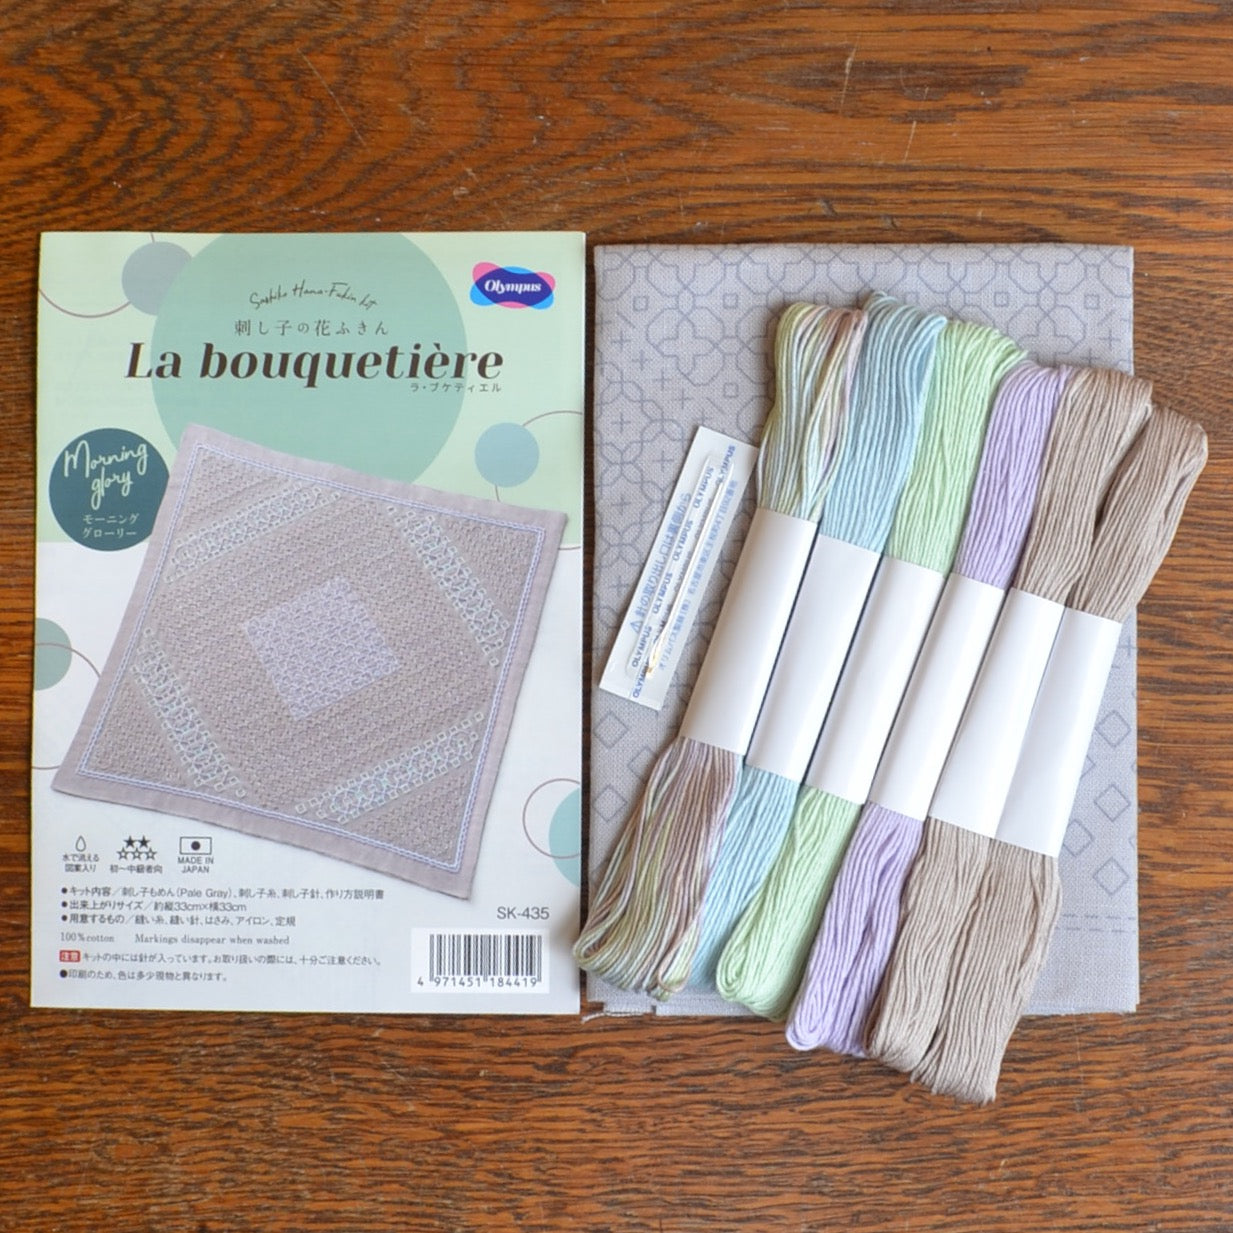 Sashiko pillow cushion kit wiht pre printed design to stitch